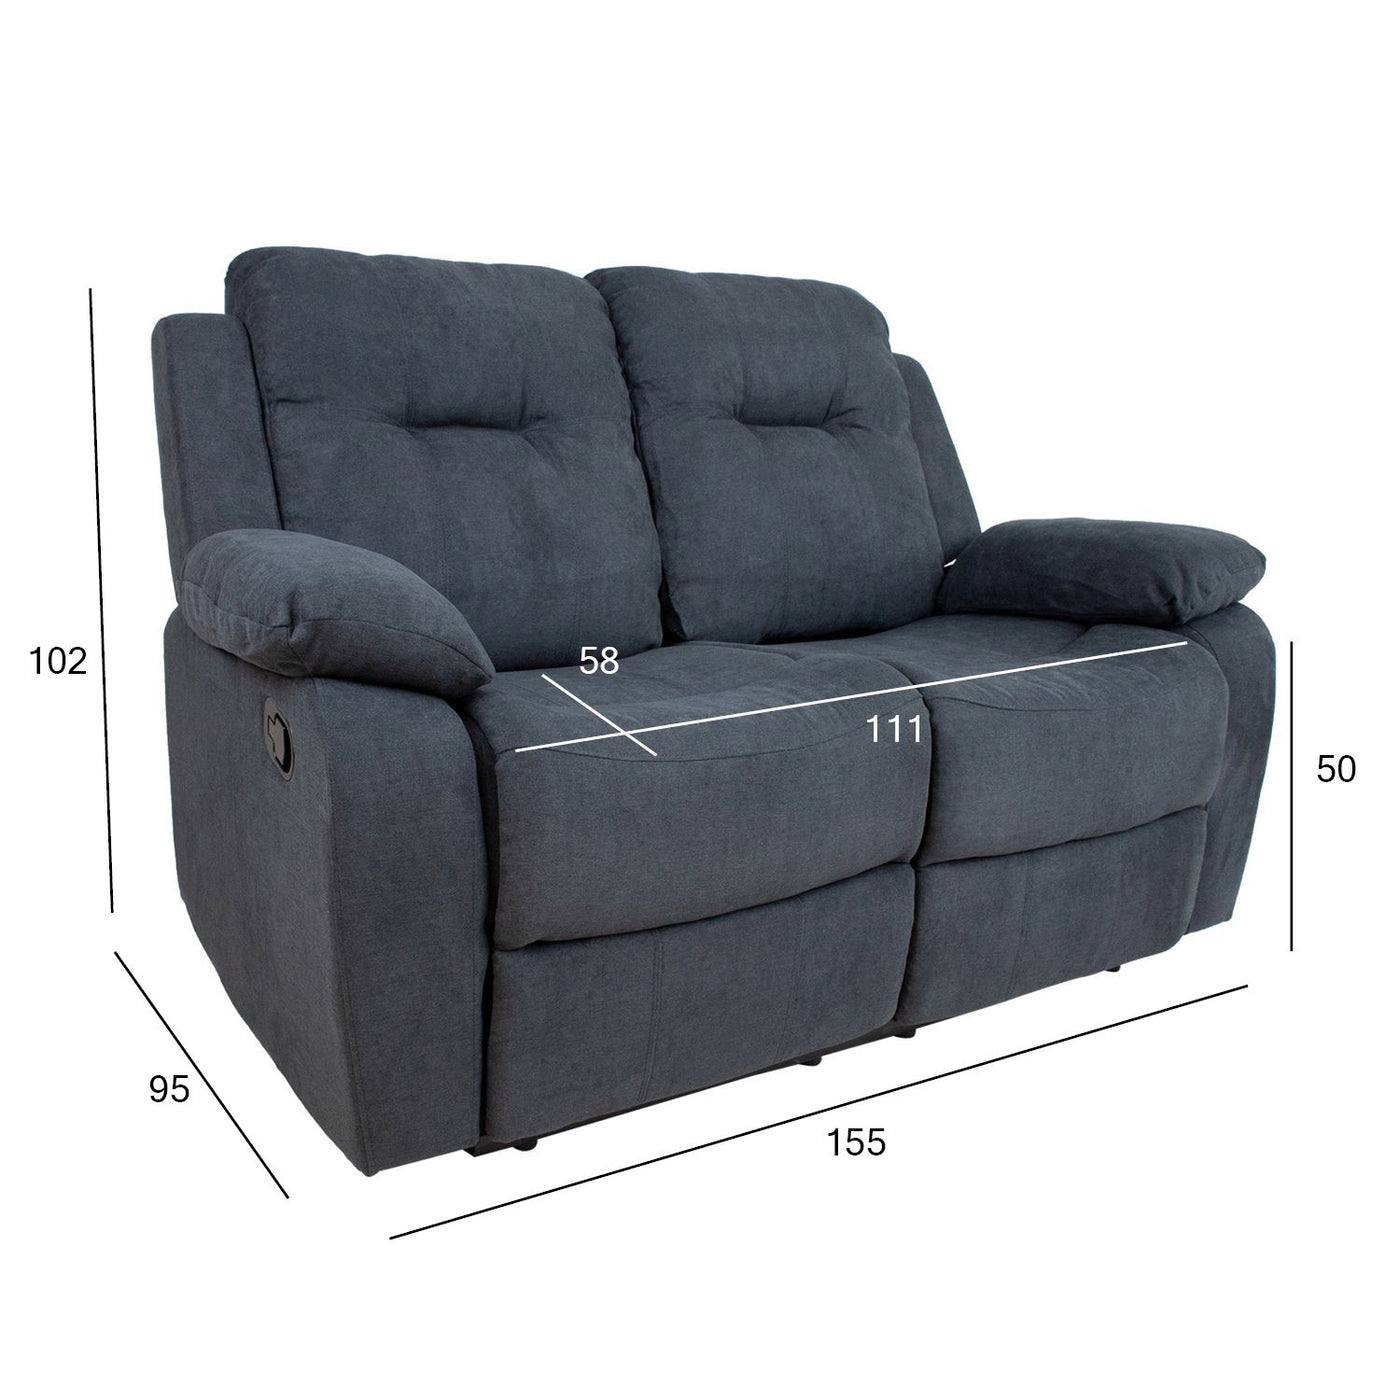 Dixon 2-istuttava recliner sohva, harmaa - Mööpeli.com